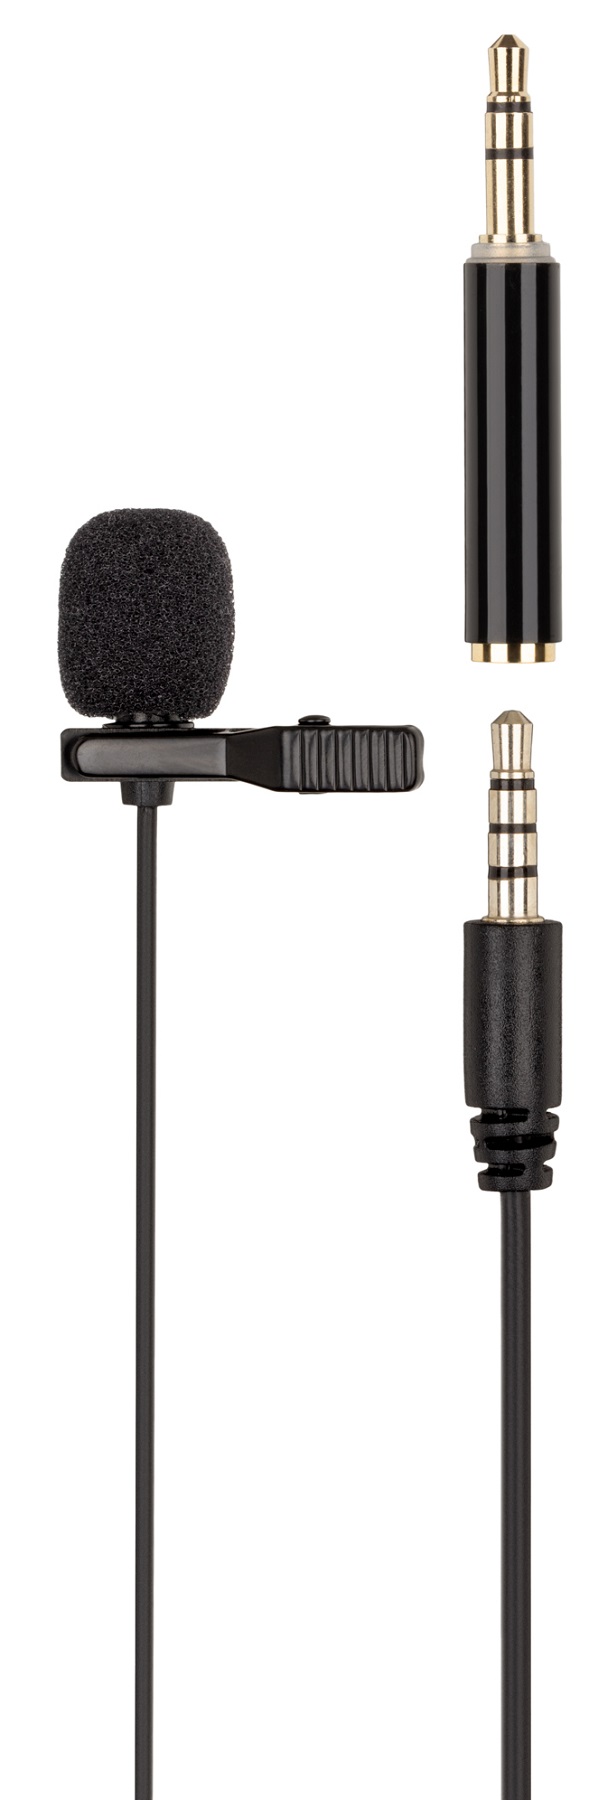 Микрофон-петличка 2Е ML020 3.5mm (2E-ML020) в Киеве